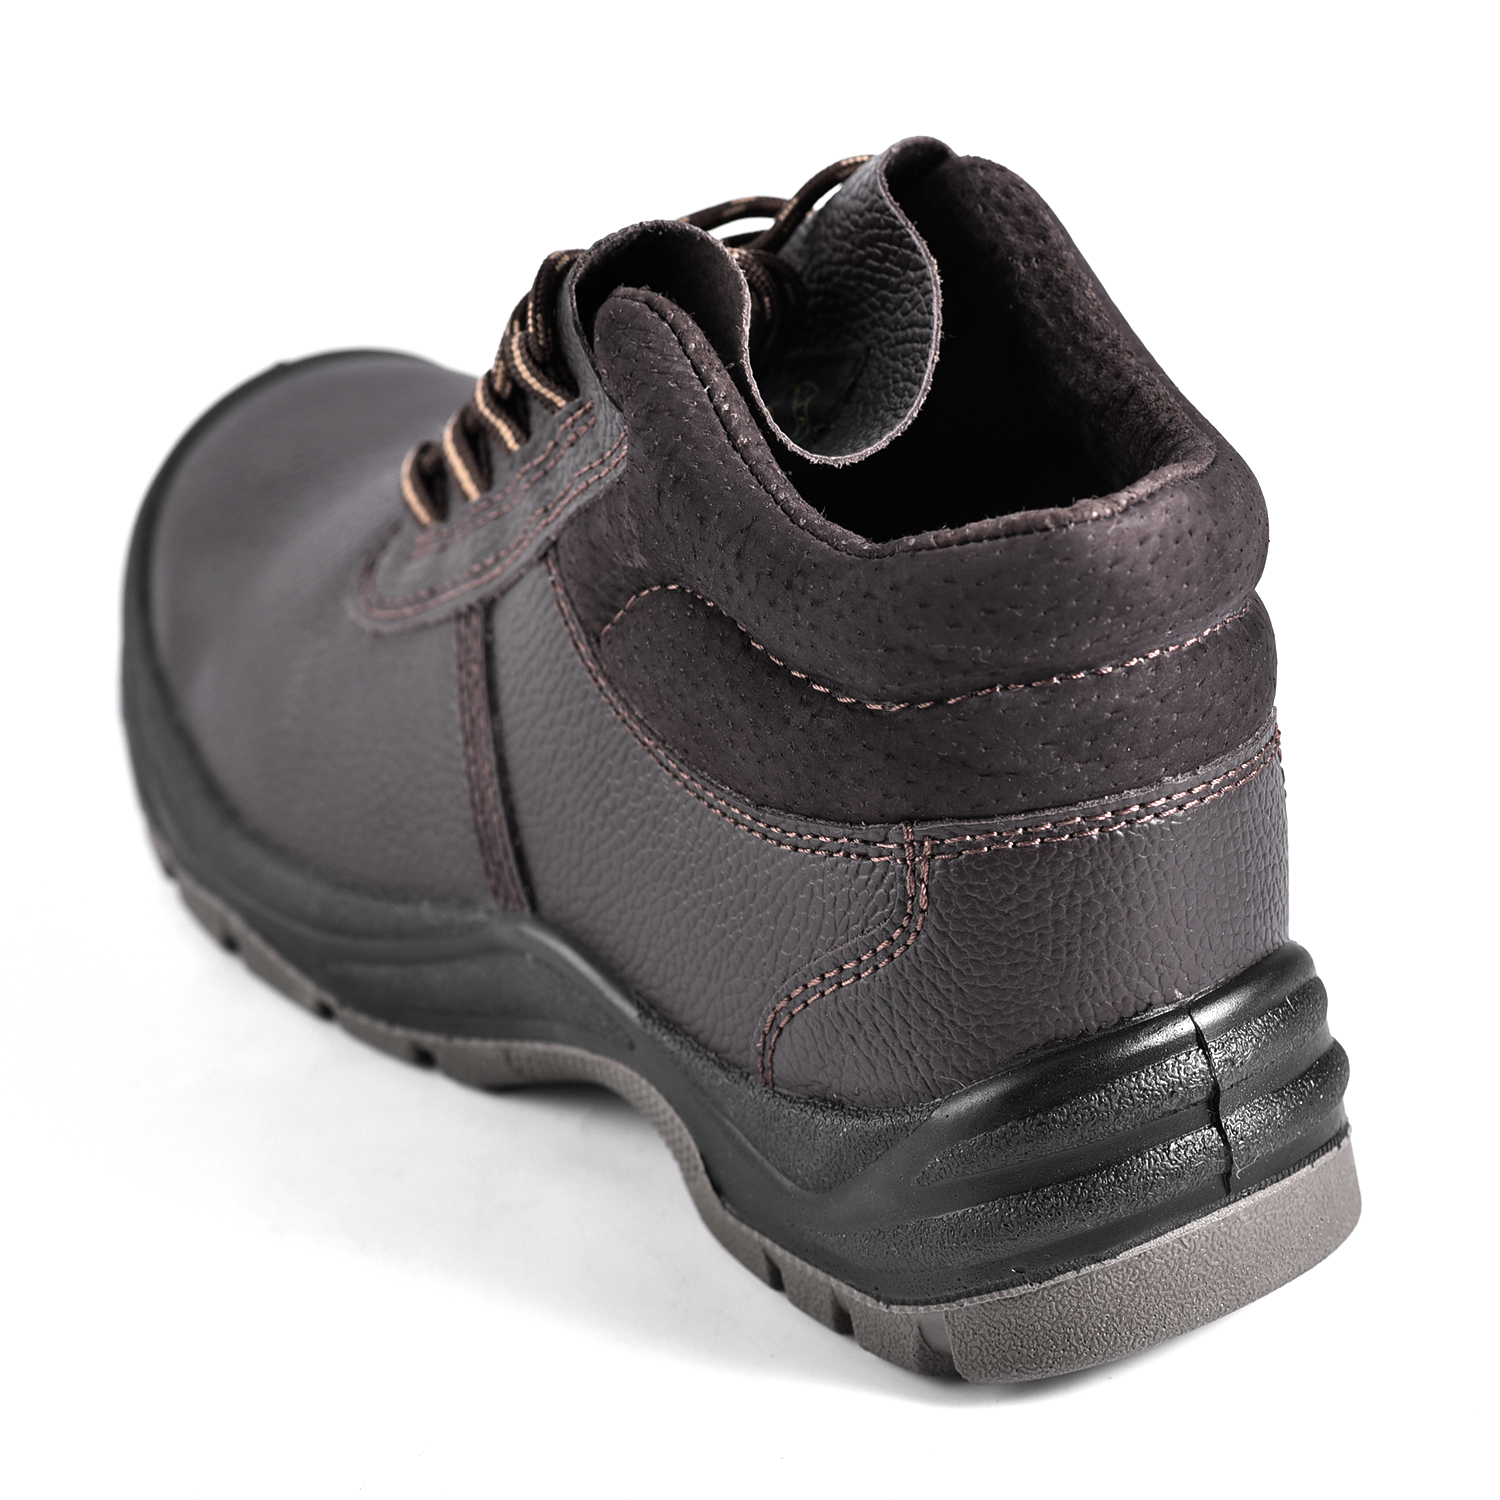 Zapatos de Seguridad Nuevo Diseño S3 M-8138 Marrón